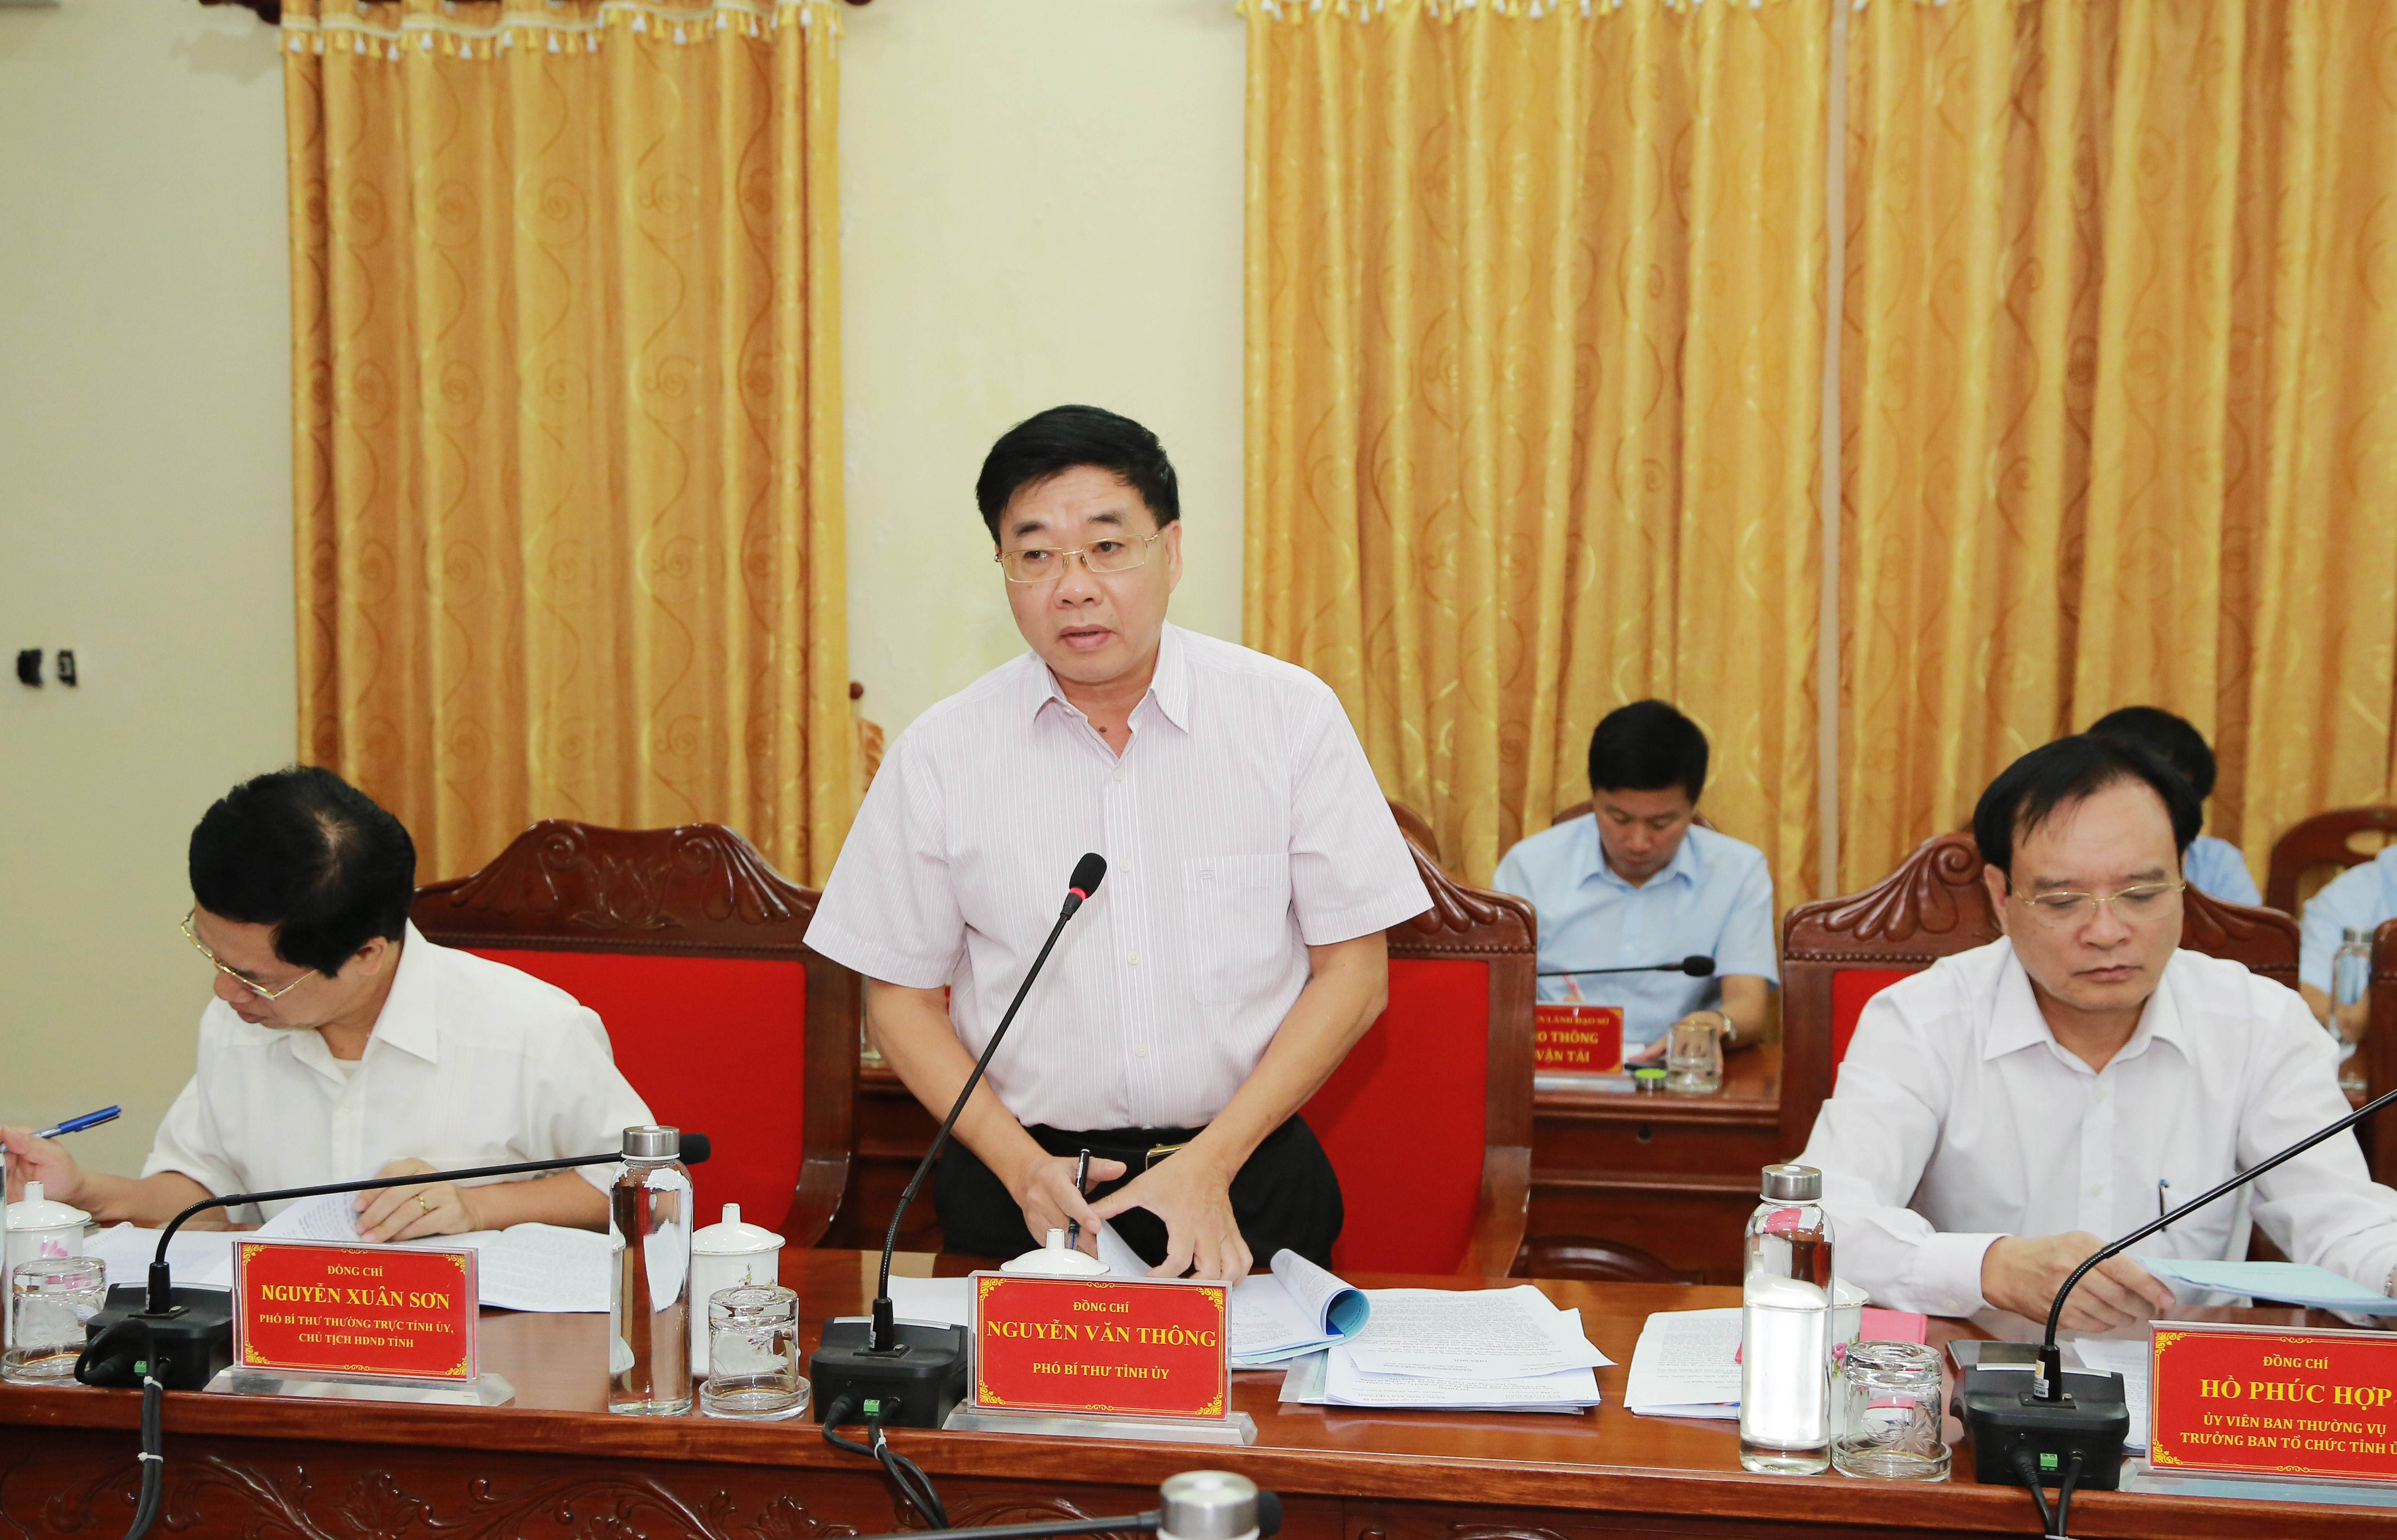 Đồng chí Nguyễn Văn Thông - Phó Bí thư Tỉnh ủy phát biểu tại buổi cuộc họp. Ảnh: Đào Tuấn